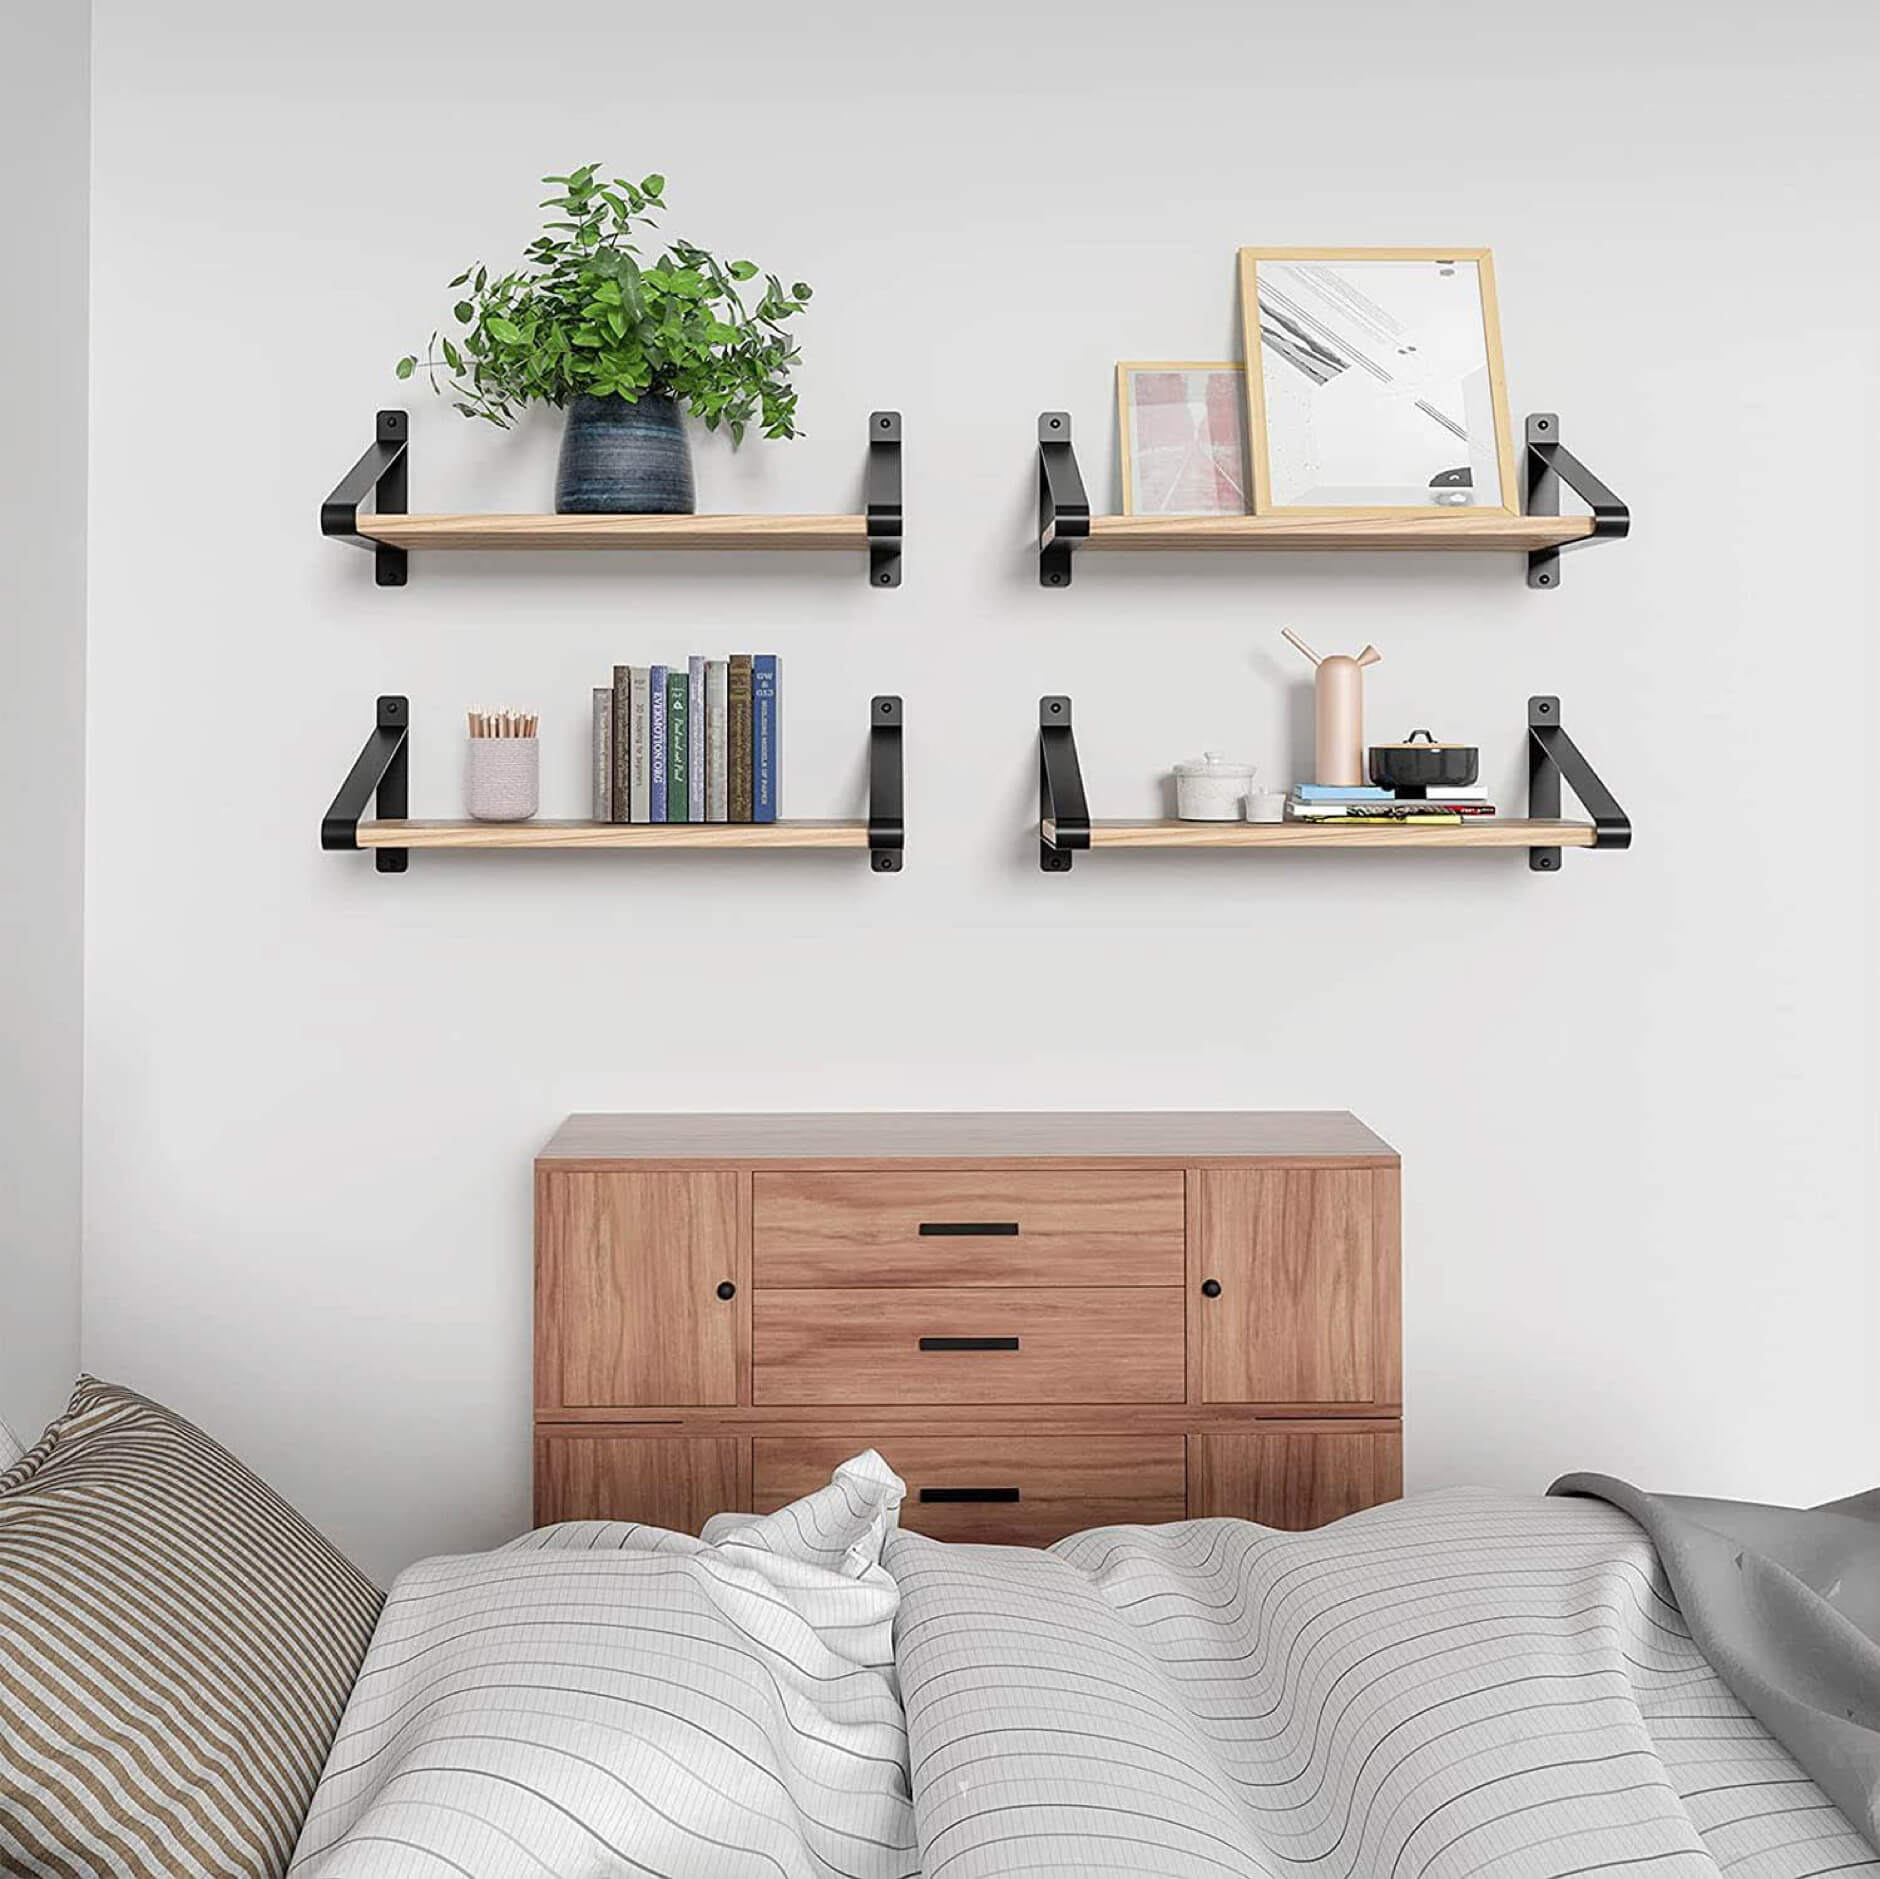 Trang trí phòng ngủ đơn giản với kệ gỗ